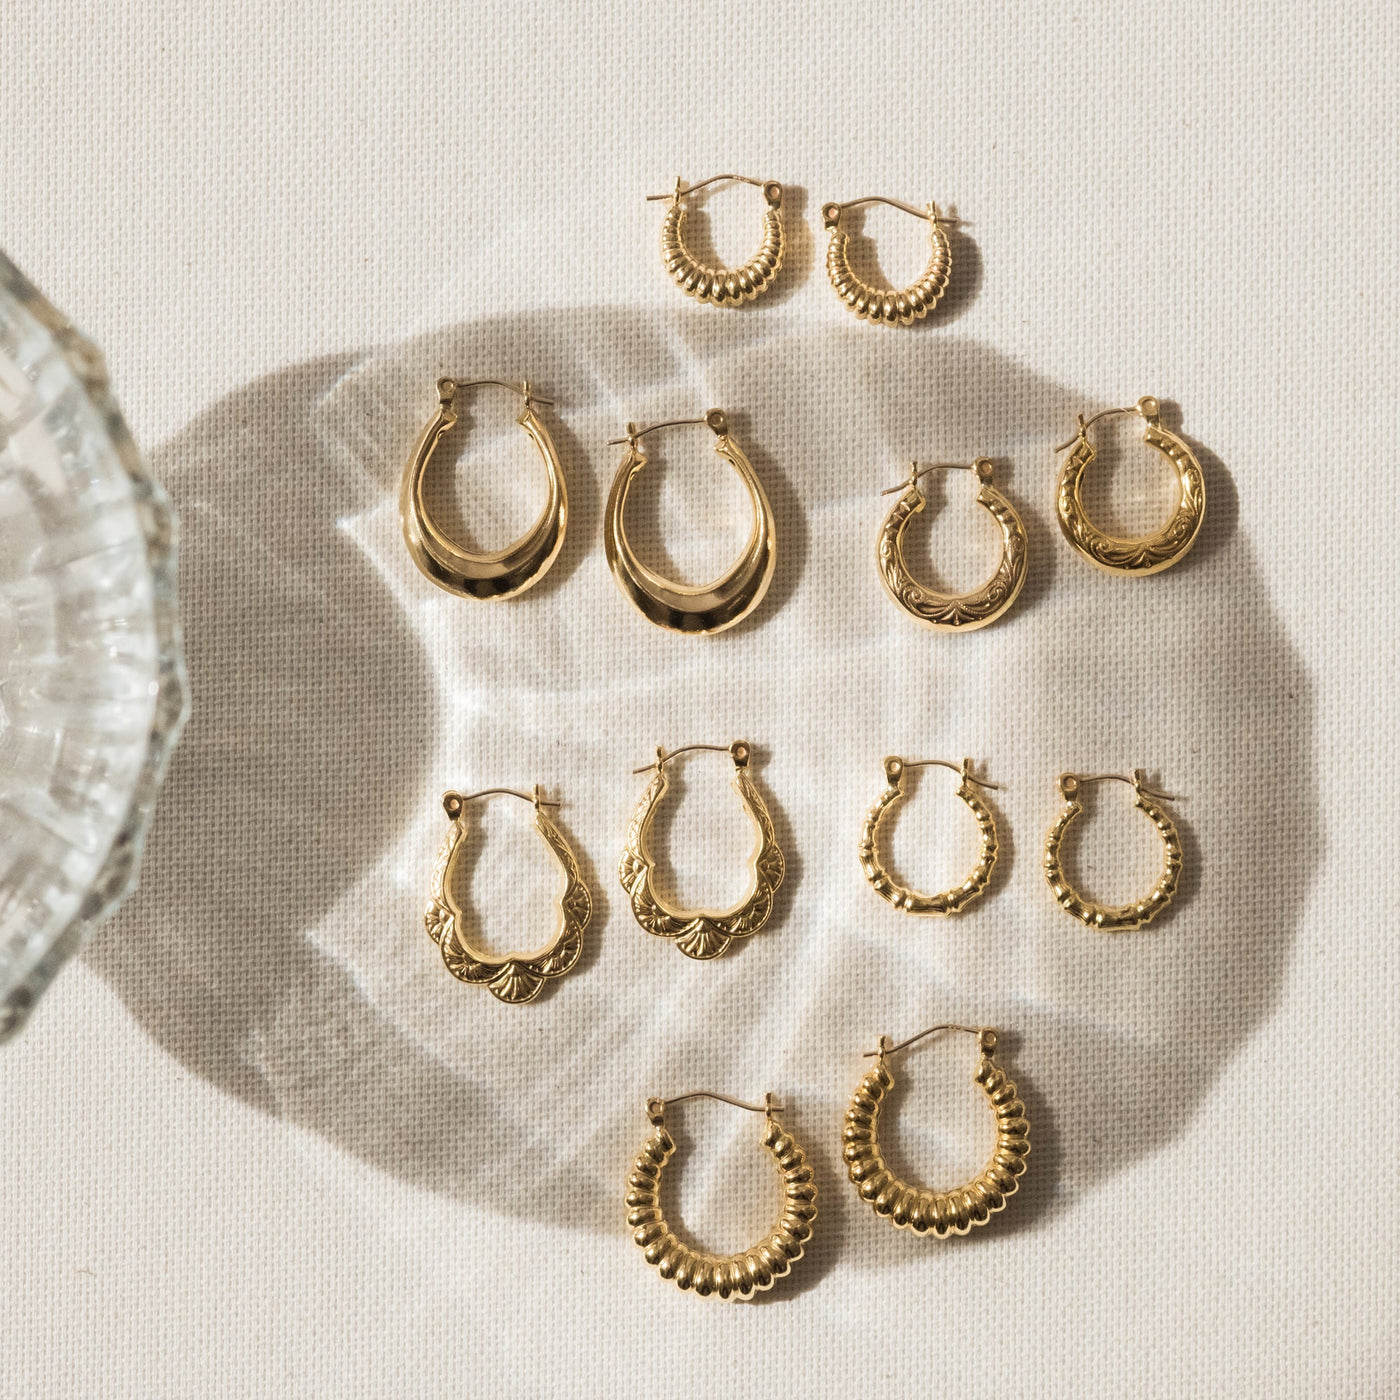 Vintage Floral Hoop Earrings | Simple & Dainty Jewelry